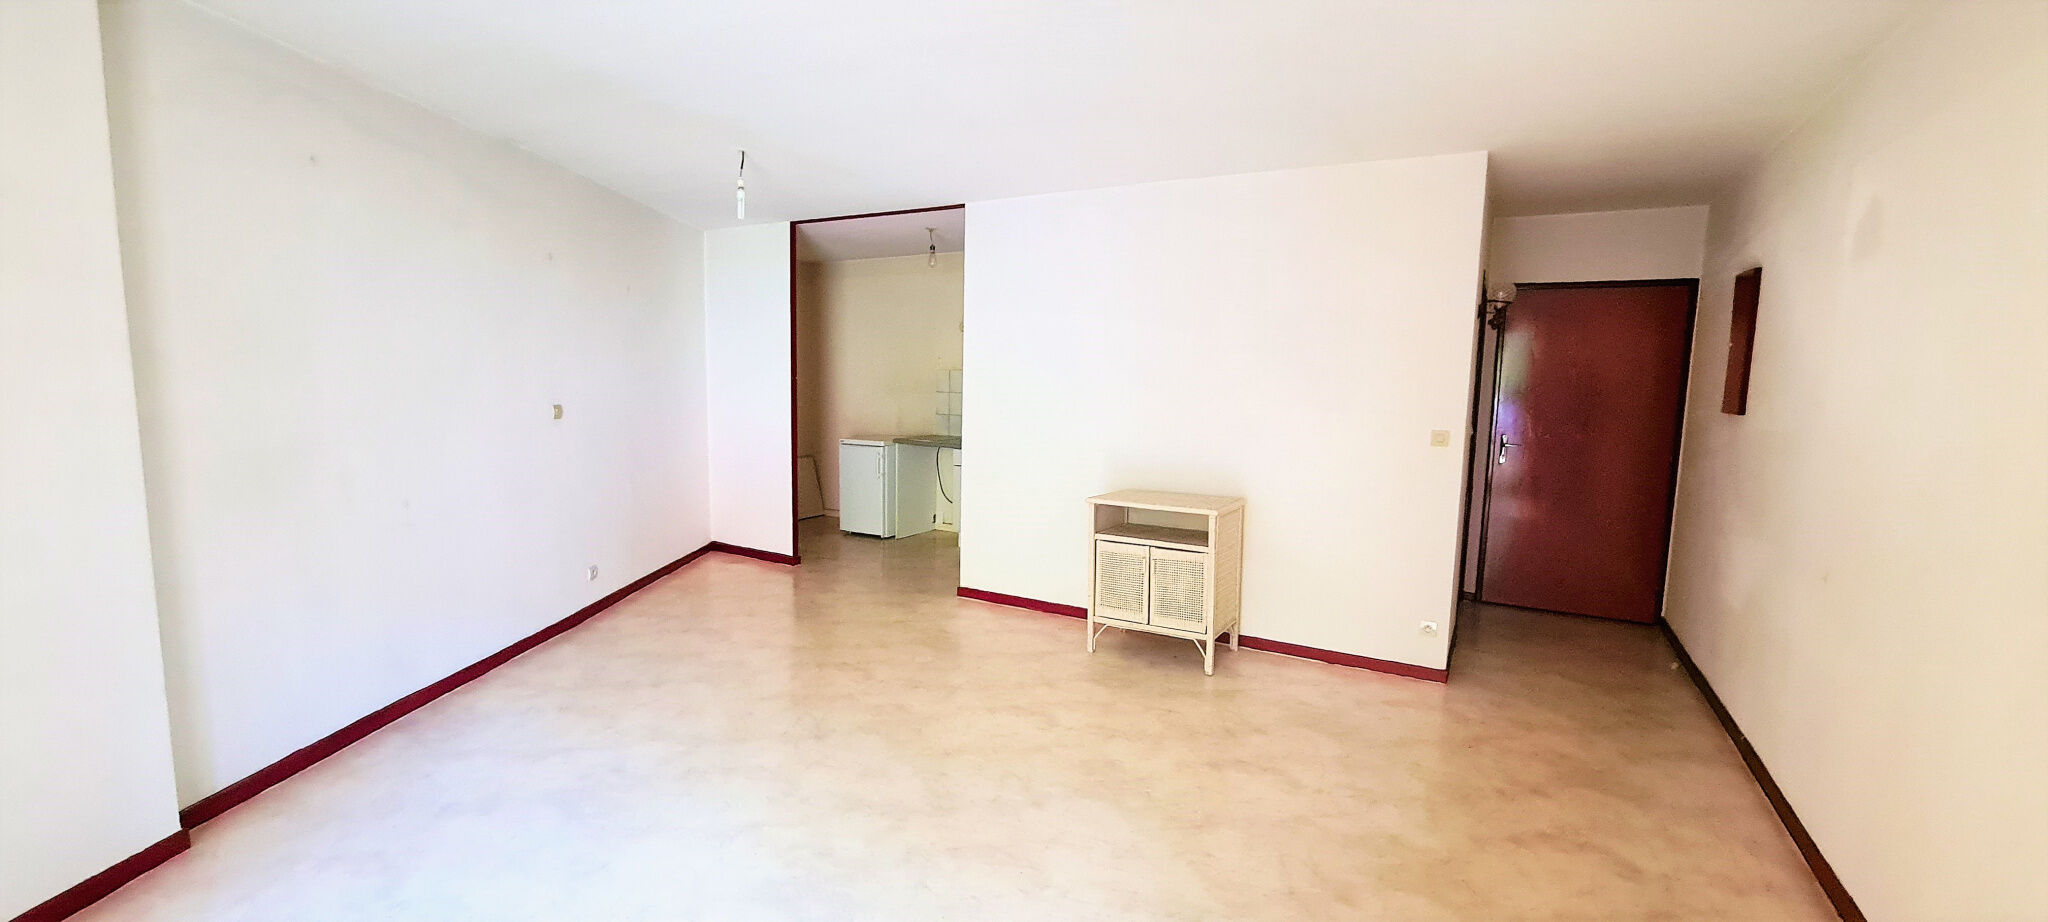 Appartement 1 pièces  à louer Amélie-les-Bains-Palalda 66110